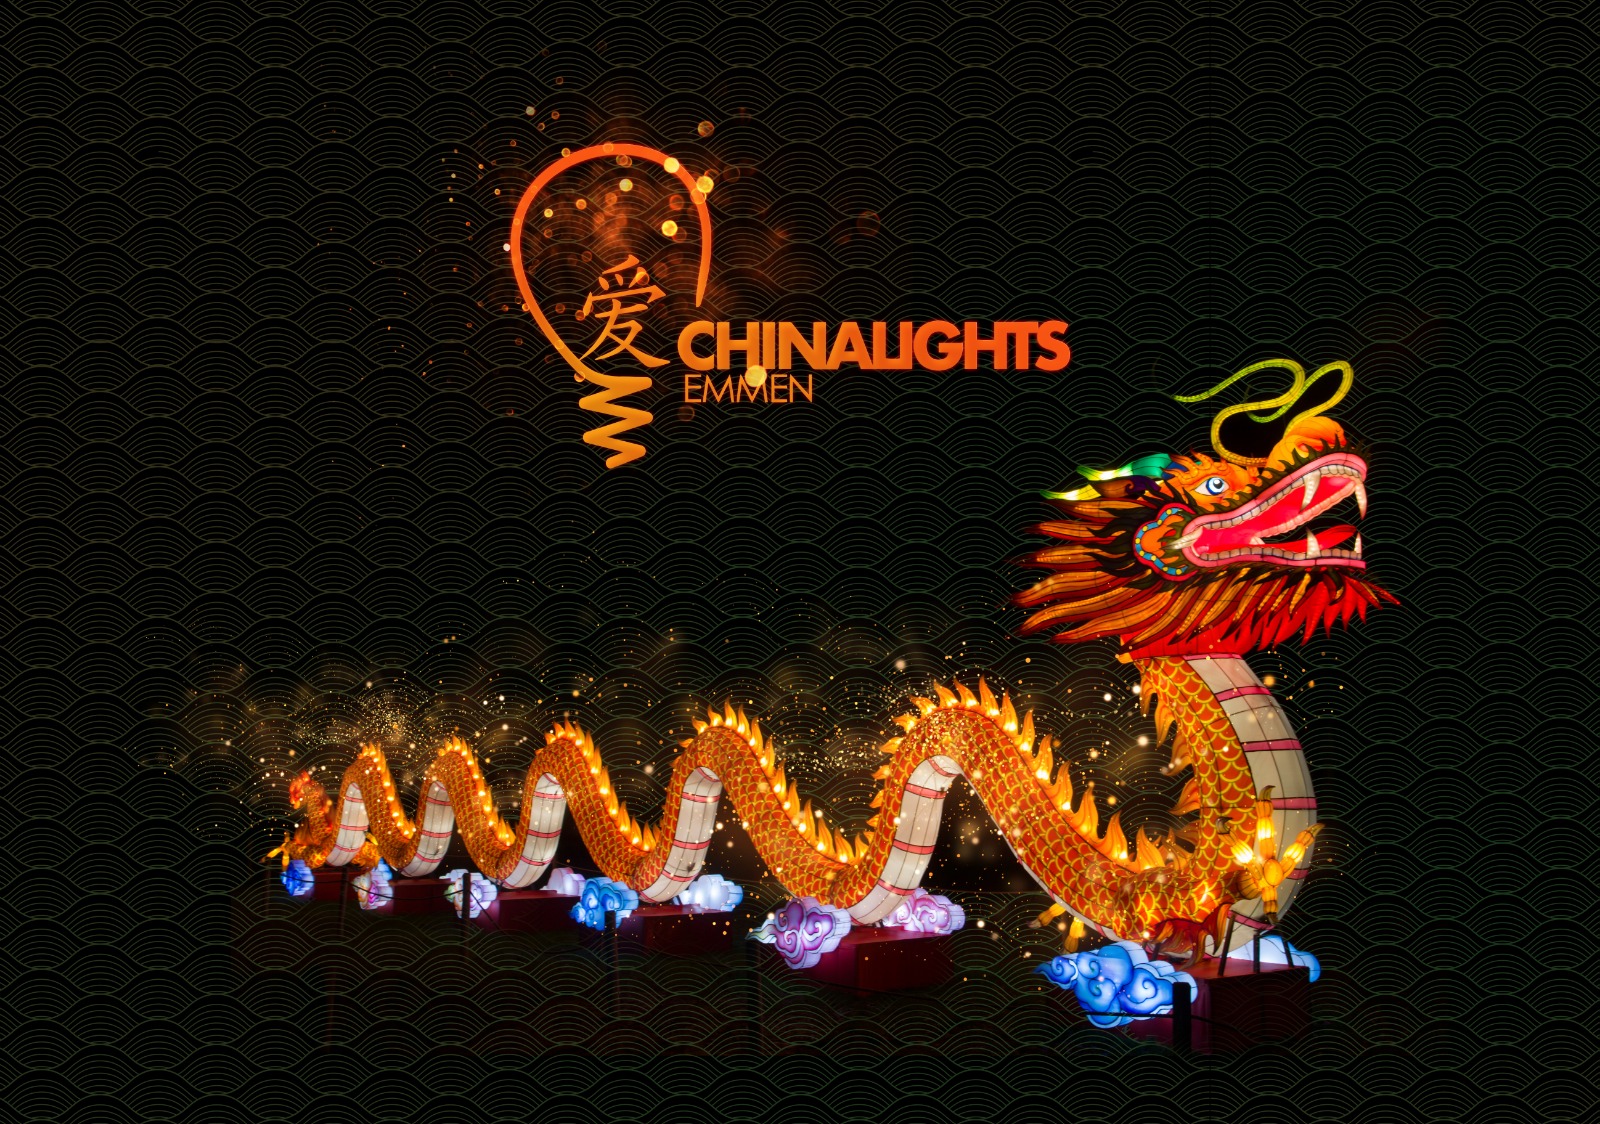 China Lights Festival Emmen